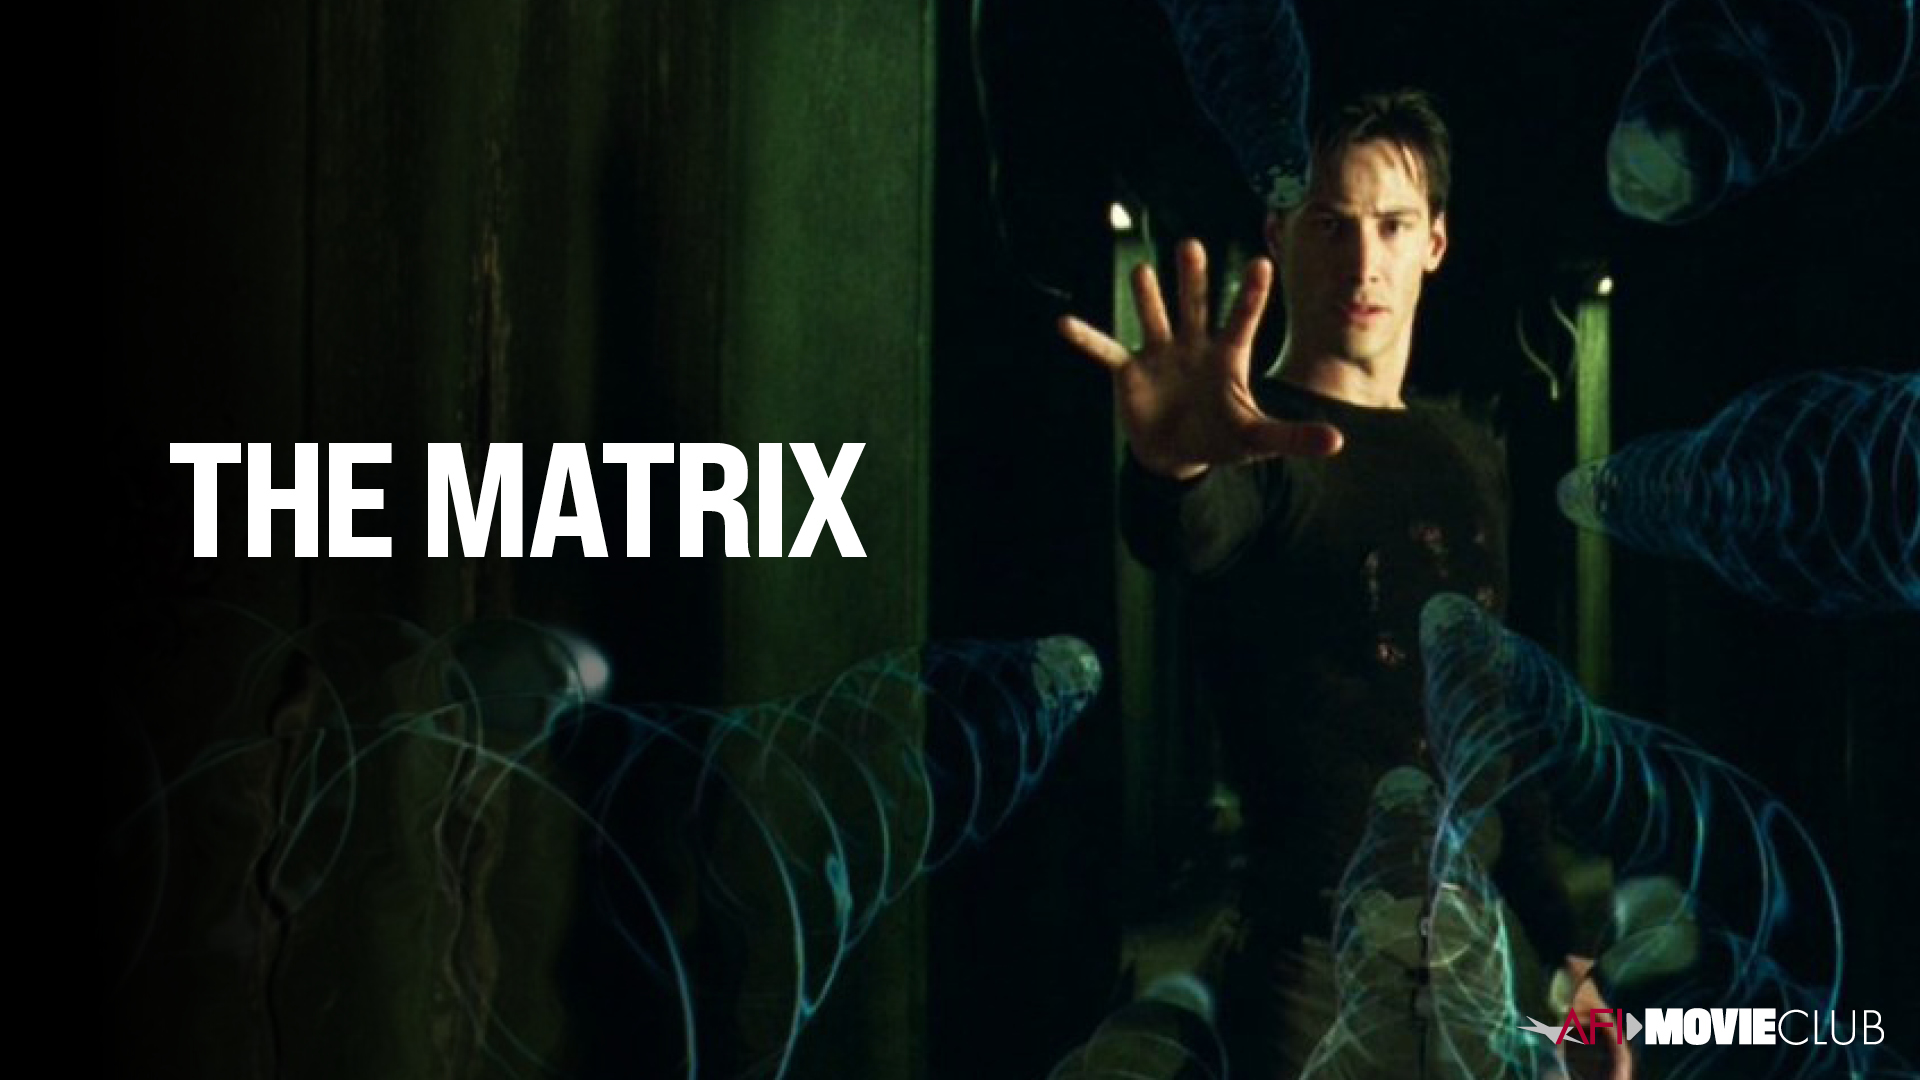 The Matrix Film Still - Keanu Reeves